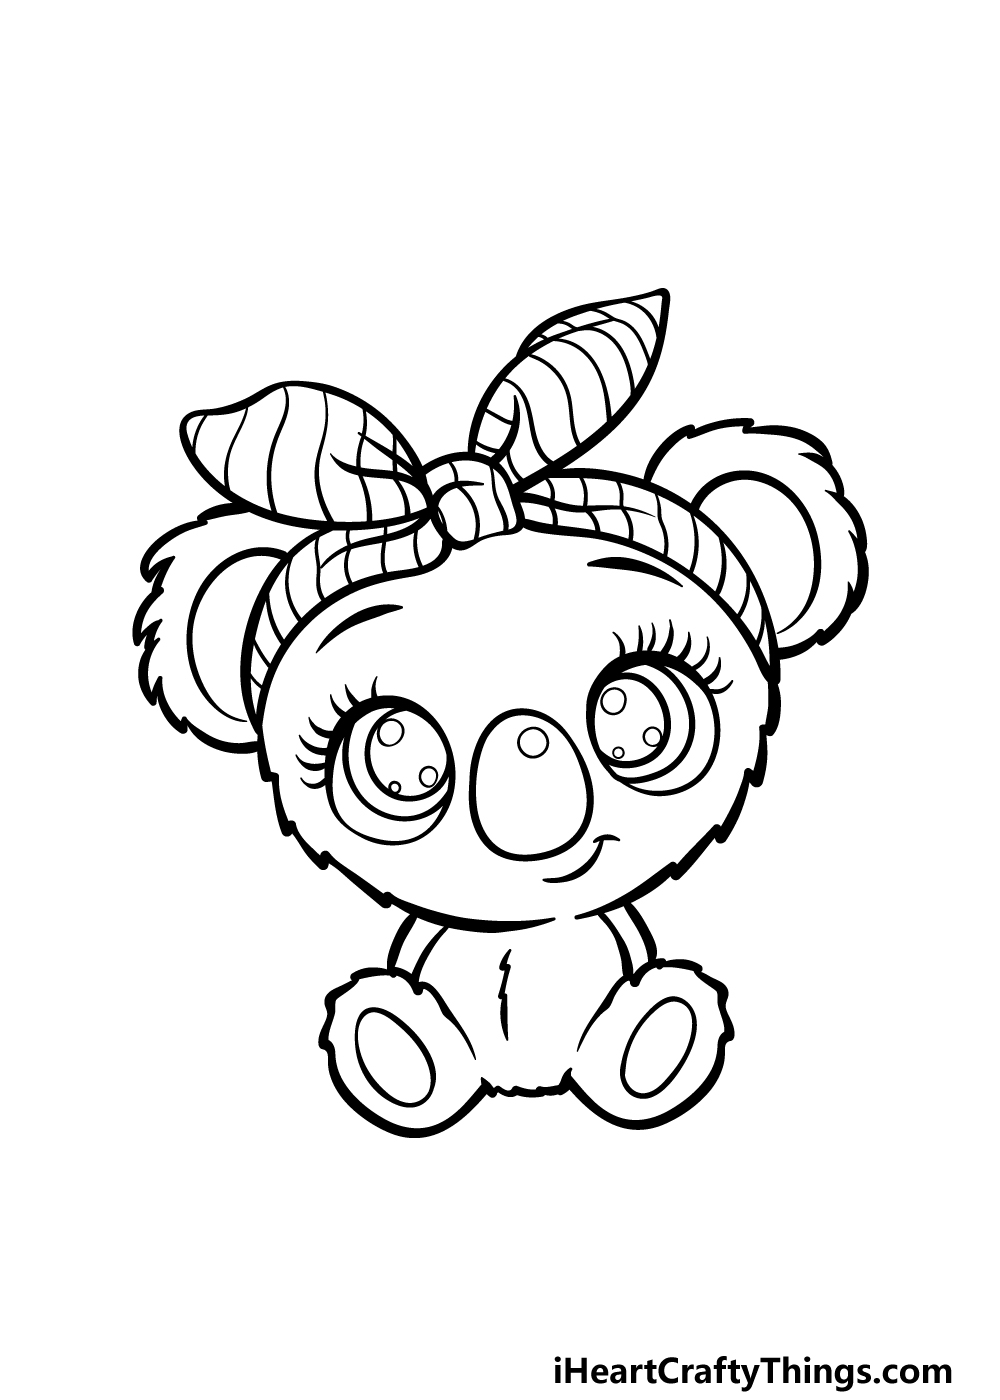 how to draw a Cute Koala step 5